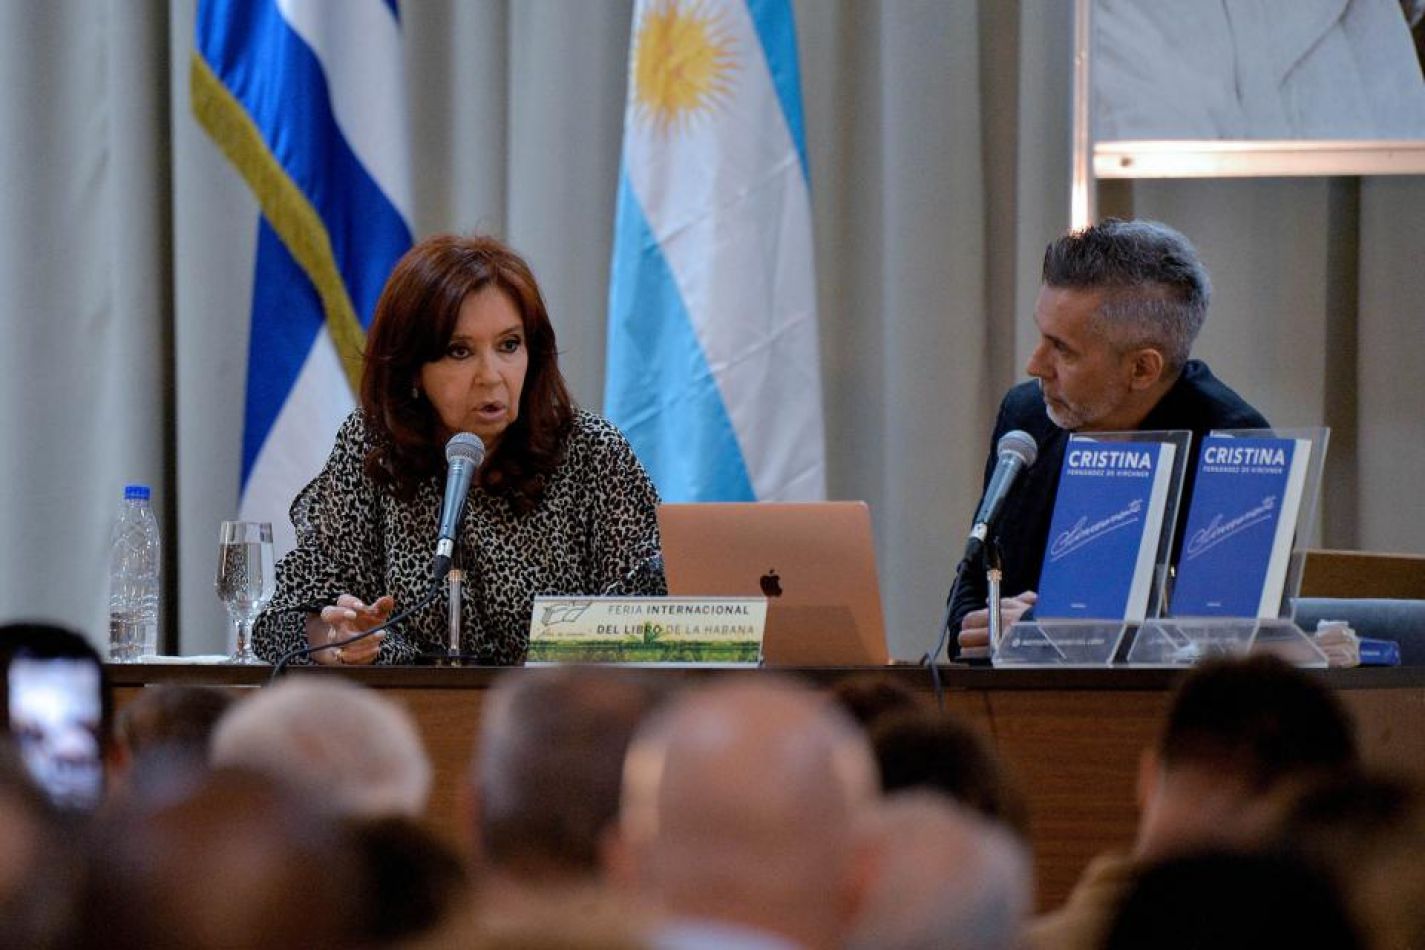 Cristina Kirchner en Cuba: "Tenemos claro que no podemos pagar si no podemos crecer"